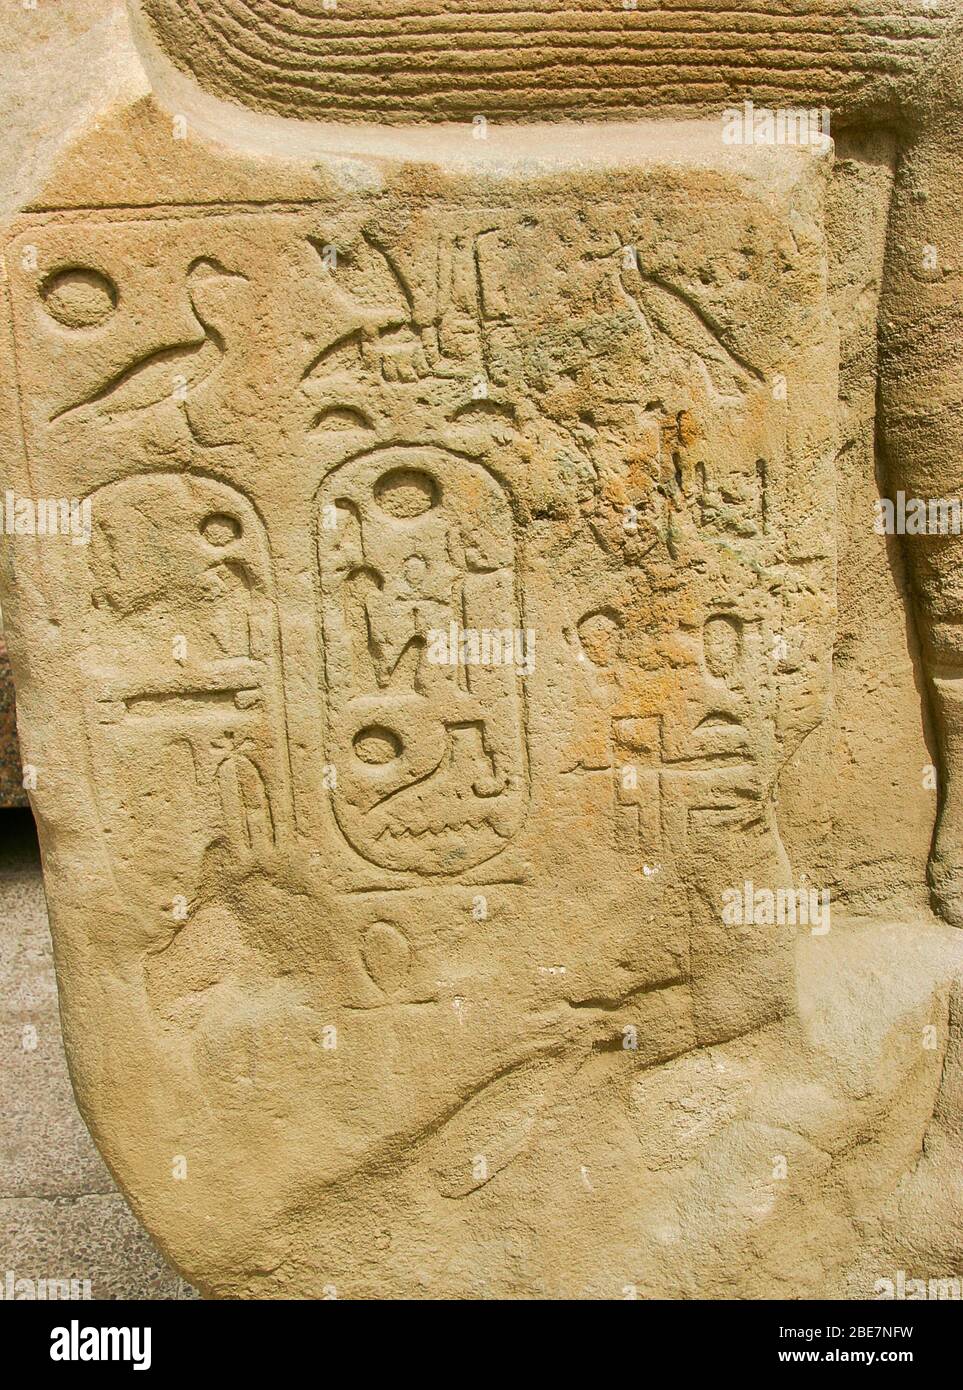 Egipto, el Cairo, Heliópolis, museo al aire libre, obelisk parc. Estatua con una rara inscripción sobre 'Nehebkaou que vive en el gran templo'. Foto de stock